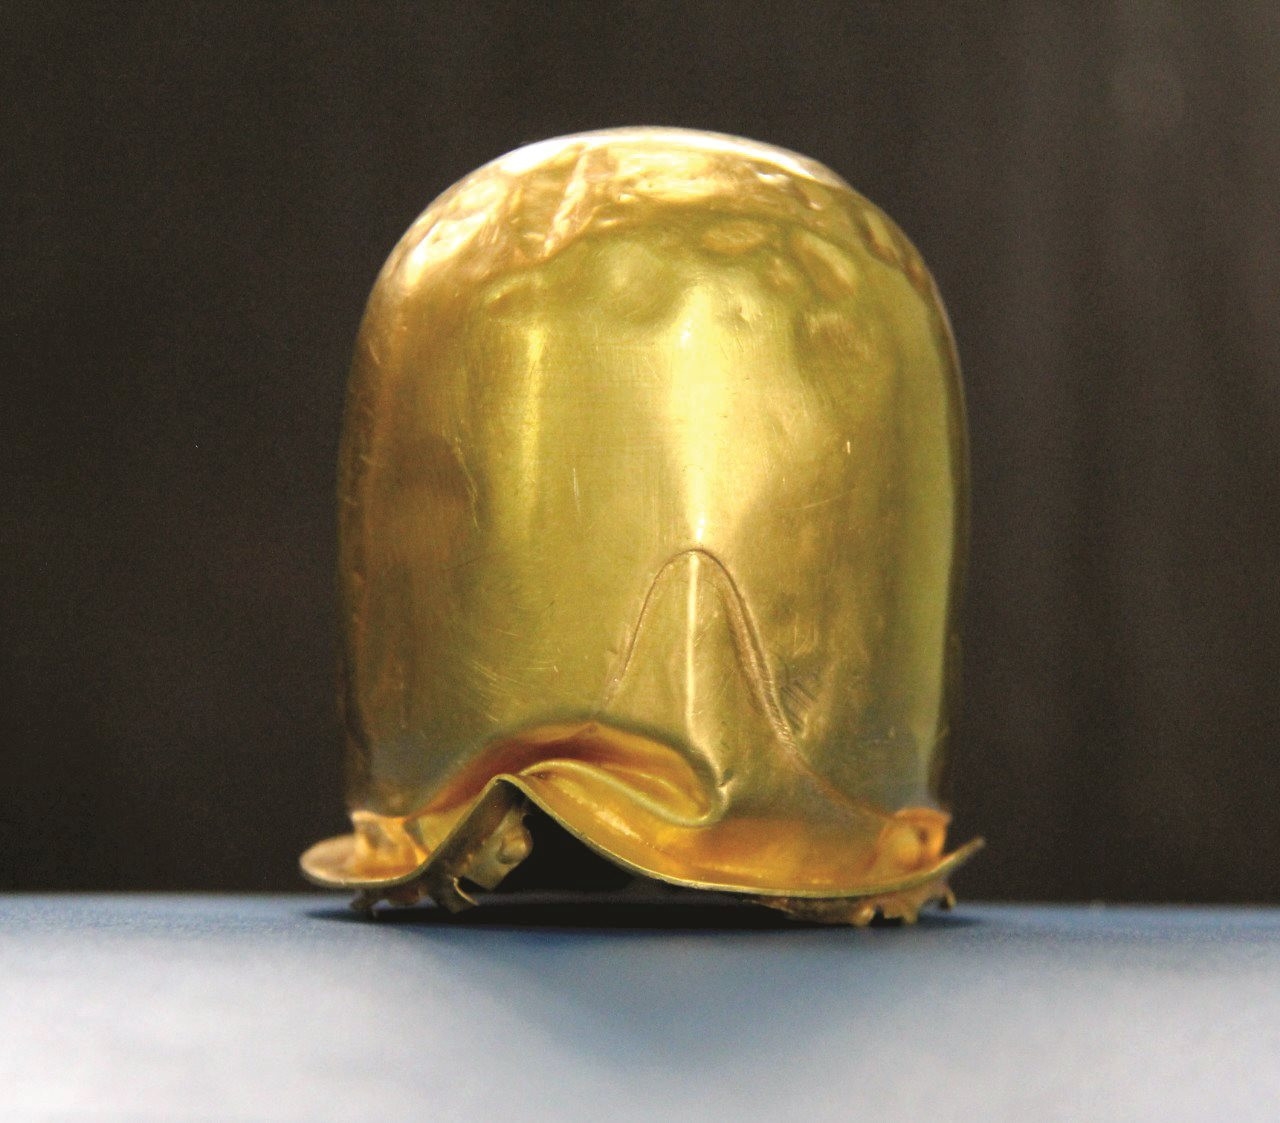 Bảo vật quốc gia Linga vàng hiện đang được lưu giữ tại Bảo tàng tỉnh Bình Thuận